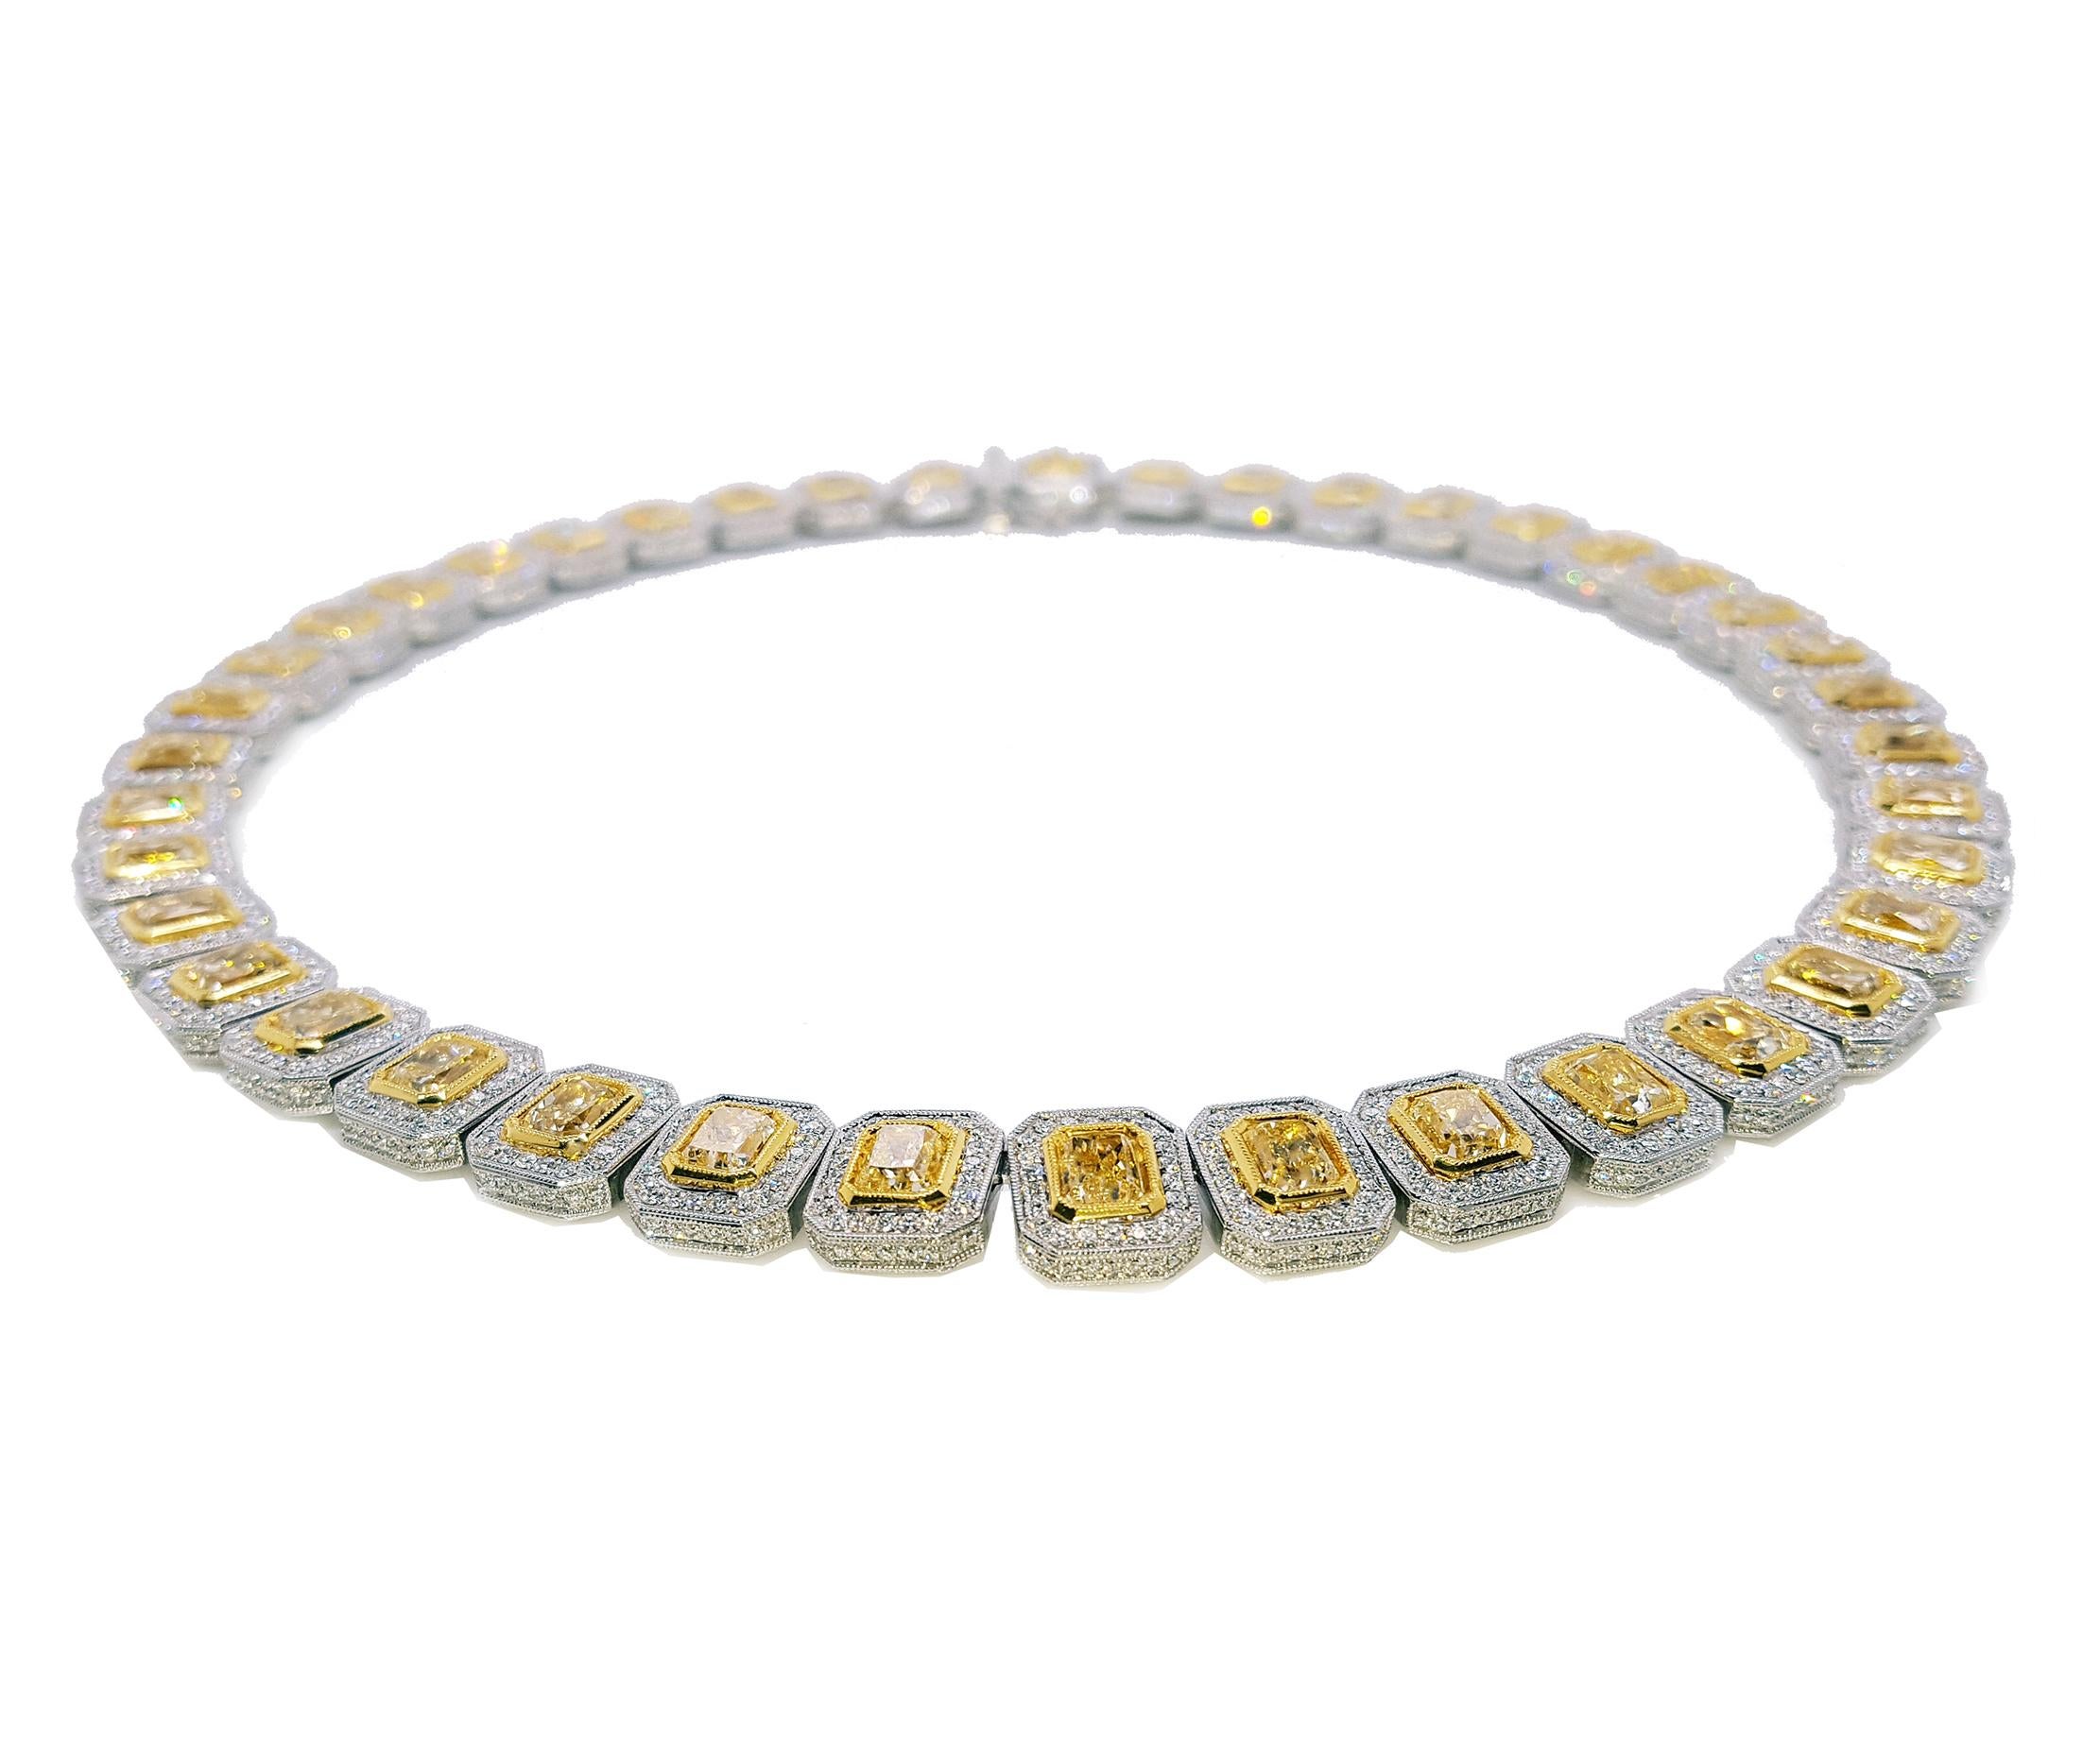 Diese luxuriöse elegante Design Diamant Ewigkeit Halskette verfügt über knapp 30 Karat perfekt abgestimmt strahlend geschliffenen gelben Diamanten, jeder Diamant ist etwa 0,71 Karat. umgeben von einem Halo von 7,90 Karat runden brillanten weißen